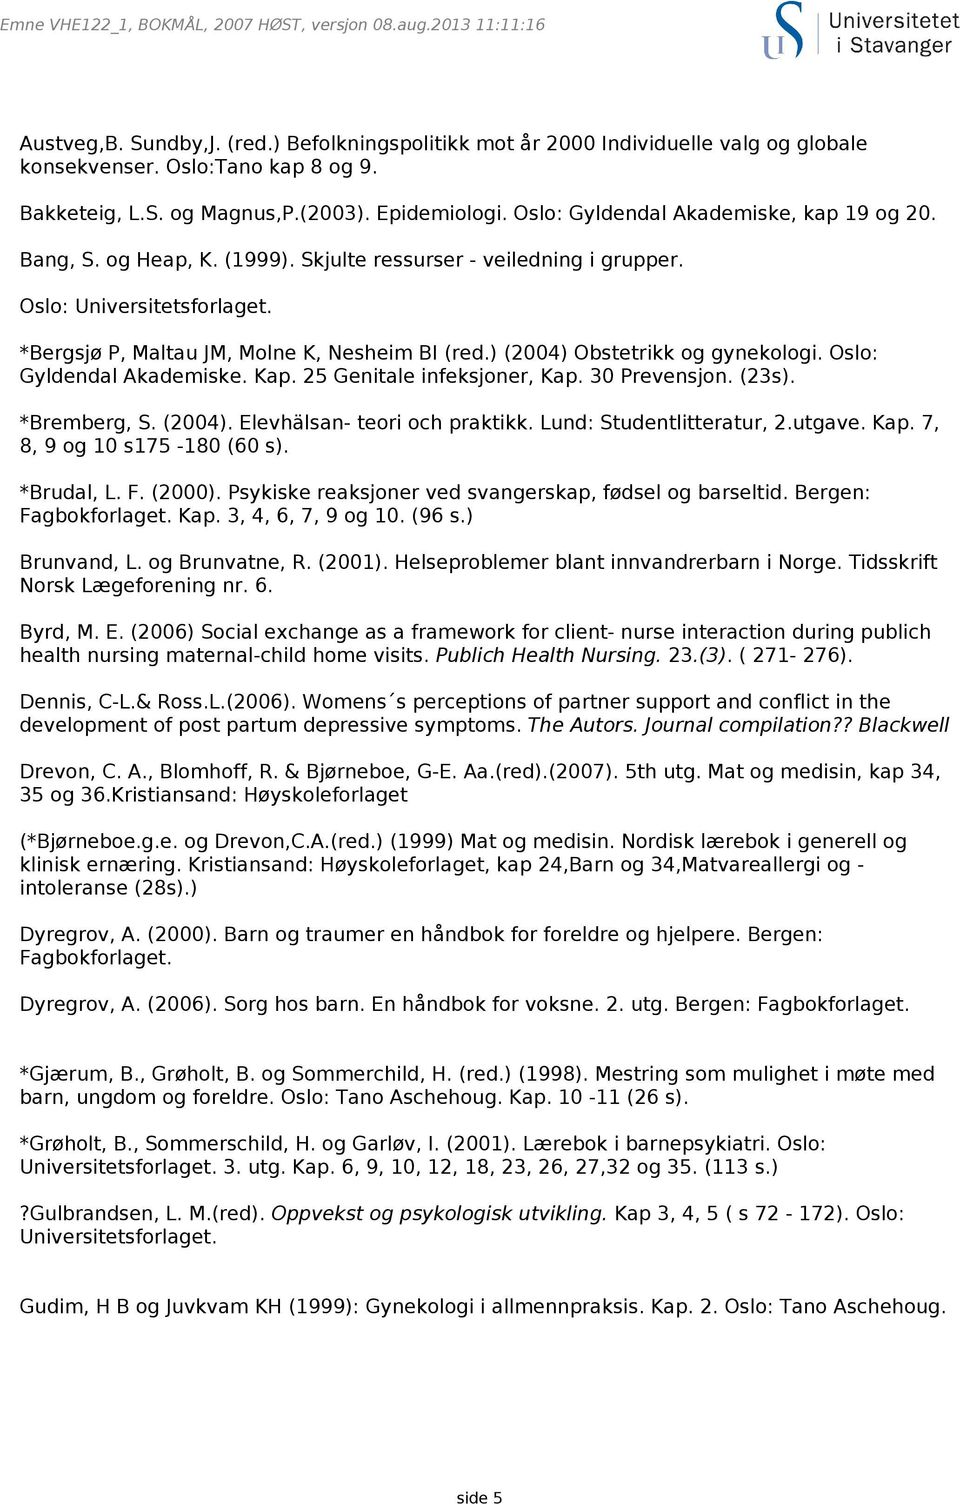 ) (2004) Obstetrikk og gynekologi. Oslo: Gyldendal Akademiske. Kap. 25 Genitale infeksjoner, Kap. 30 Prevensjon. (23s). *Bremberg, S. (2004). Elevhälsan- teori och praktikk.